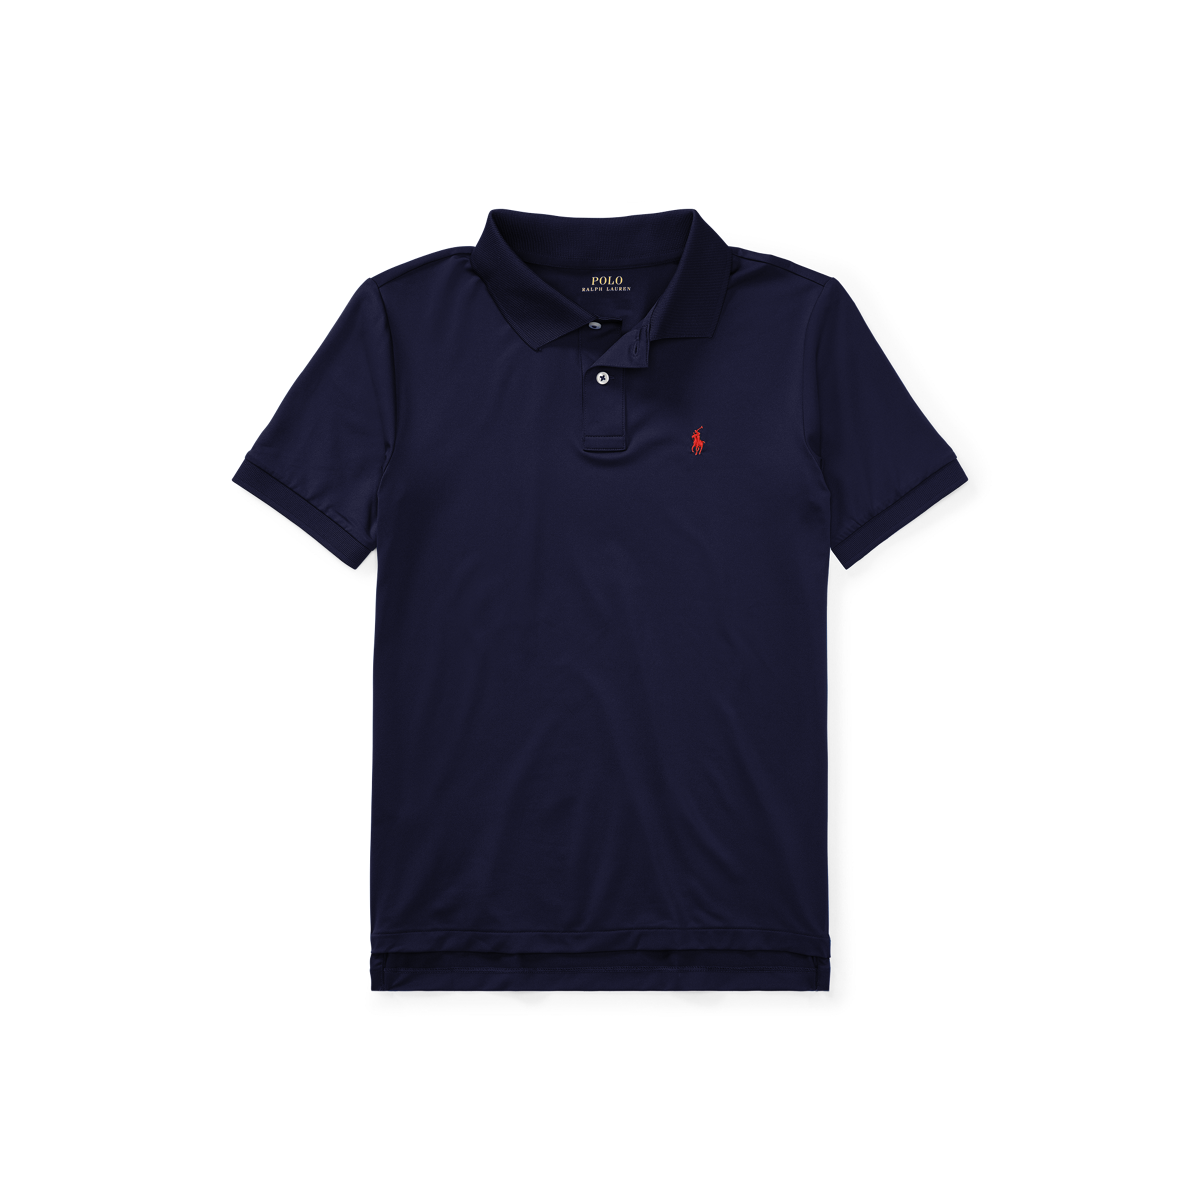 Boys 8-20 Performance Jersey Polo Shirt | Ralph Lauren